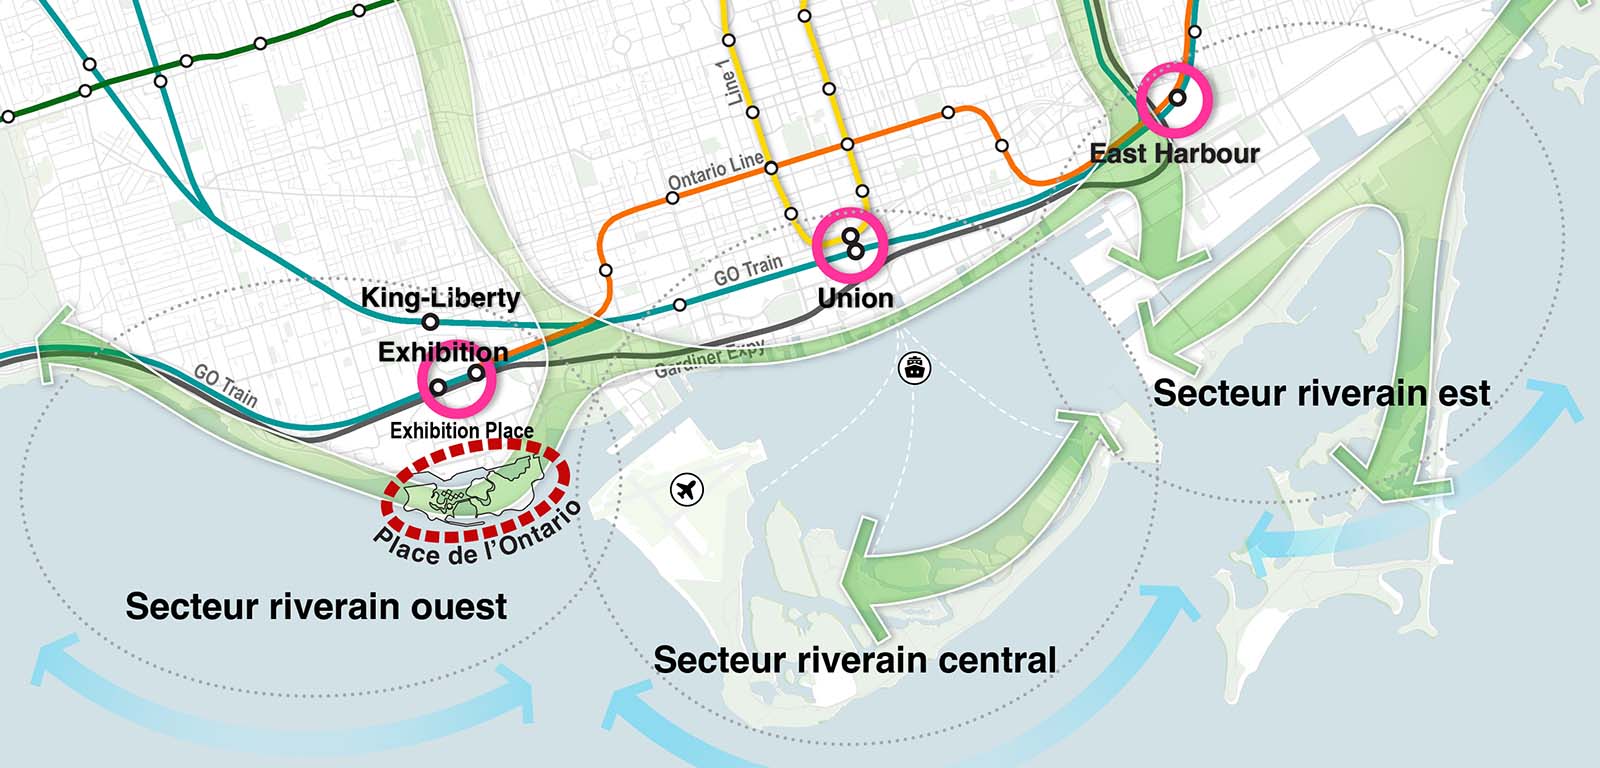 Carte du secteur riverain de Toronto montrant les liaisons de transport en commun avec la station East Harbour près du secteur riverain est, la station Union près du secteur riverain central et la station Exhibition près du secteur riverain ouest et de la Place de l’Ontario. 